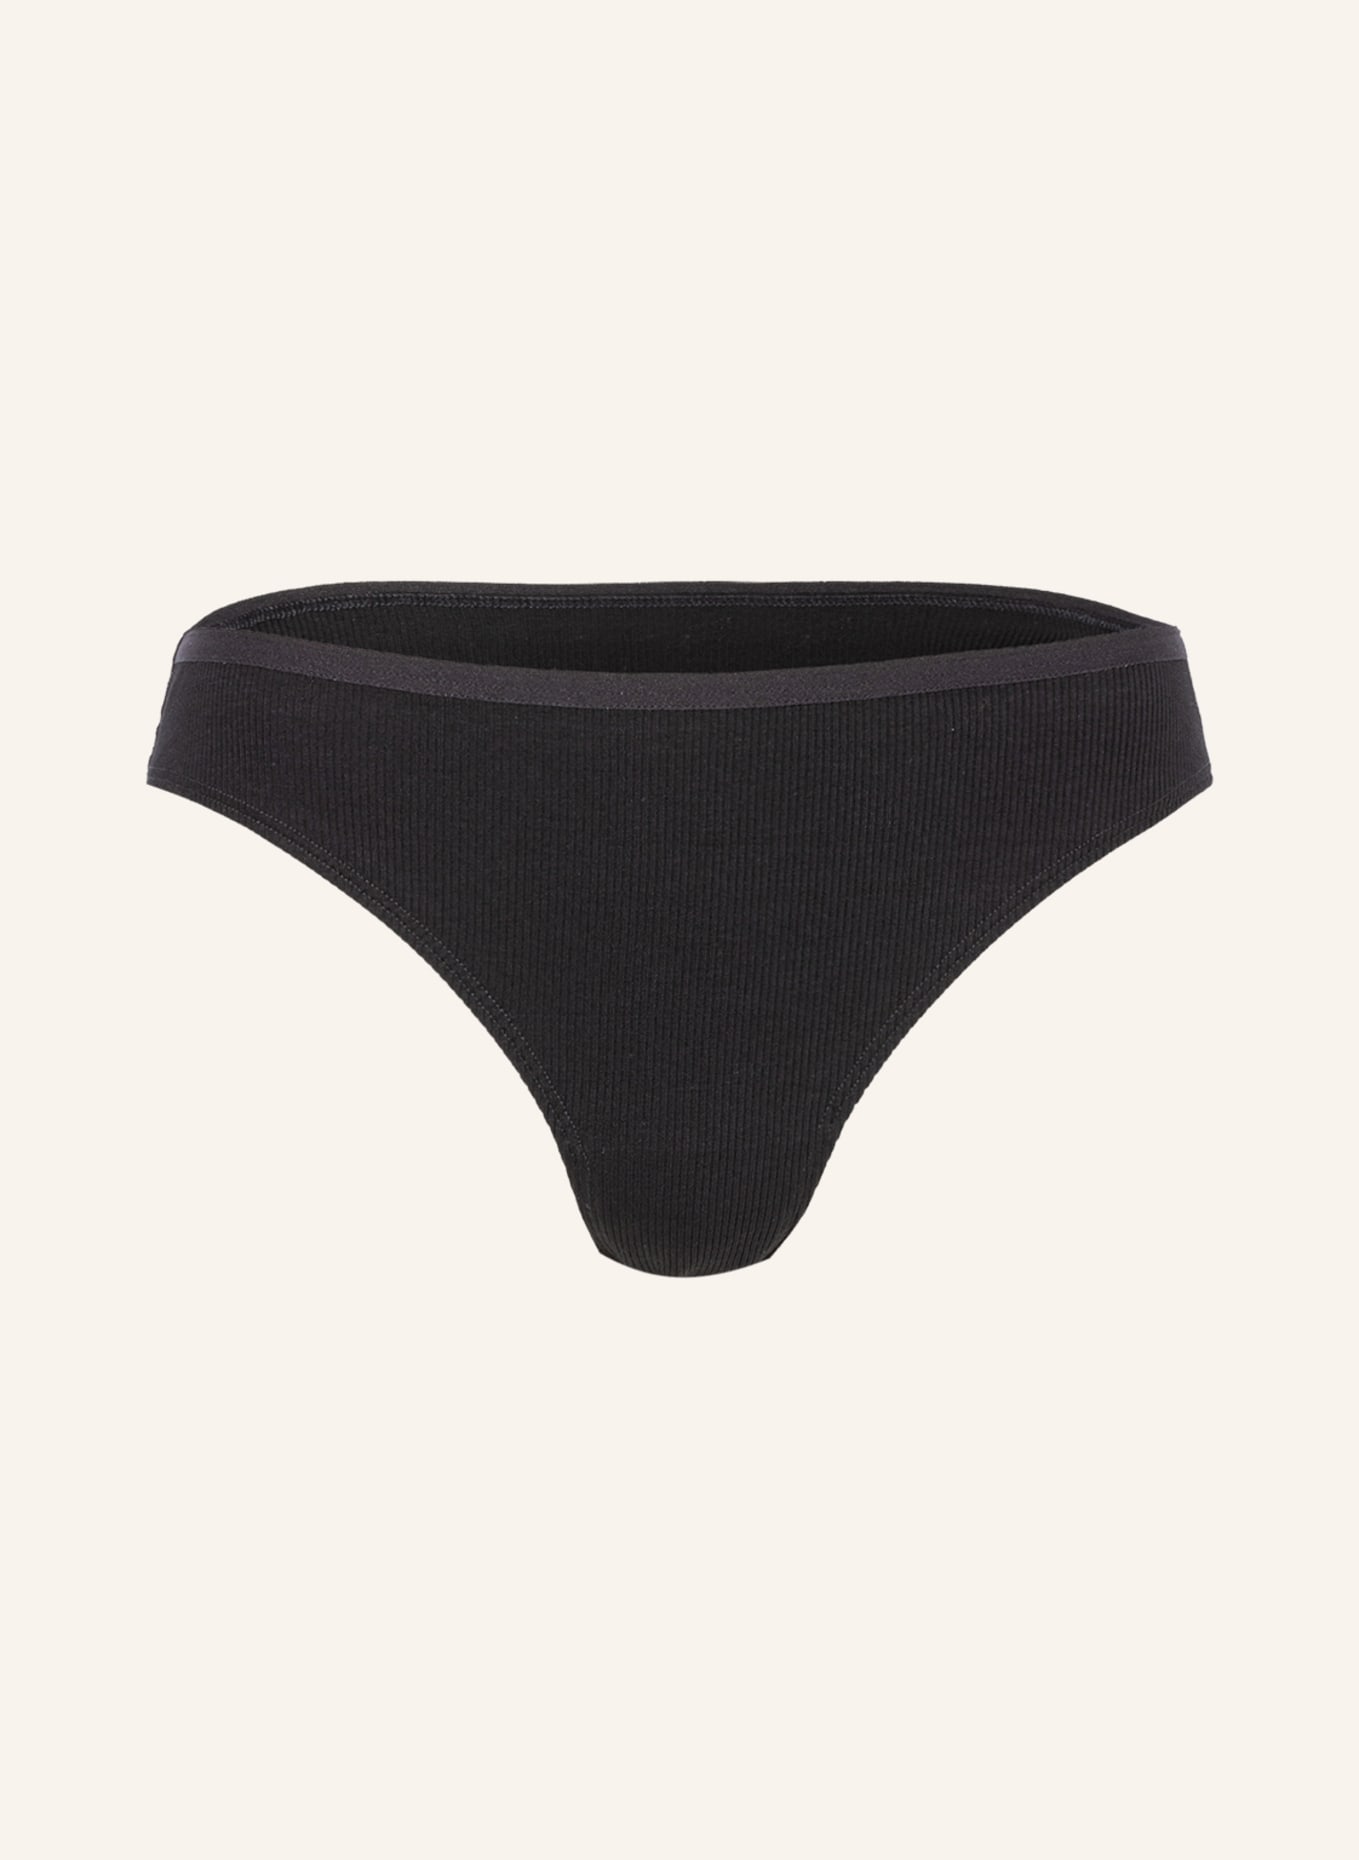 Underwear Damen - Große Auswahl, Top-Marken & persönliche Beratung